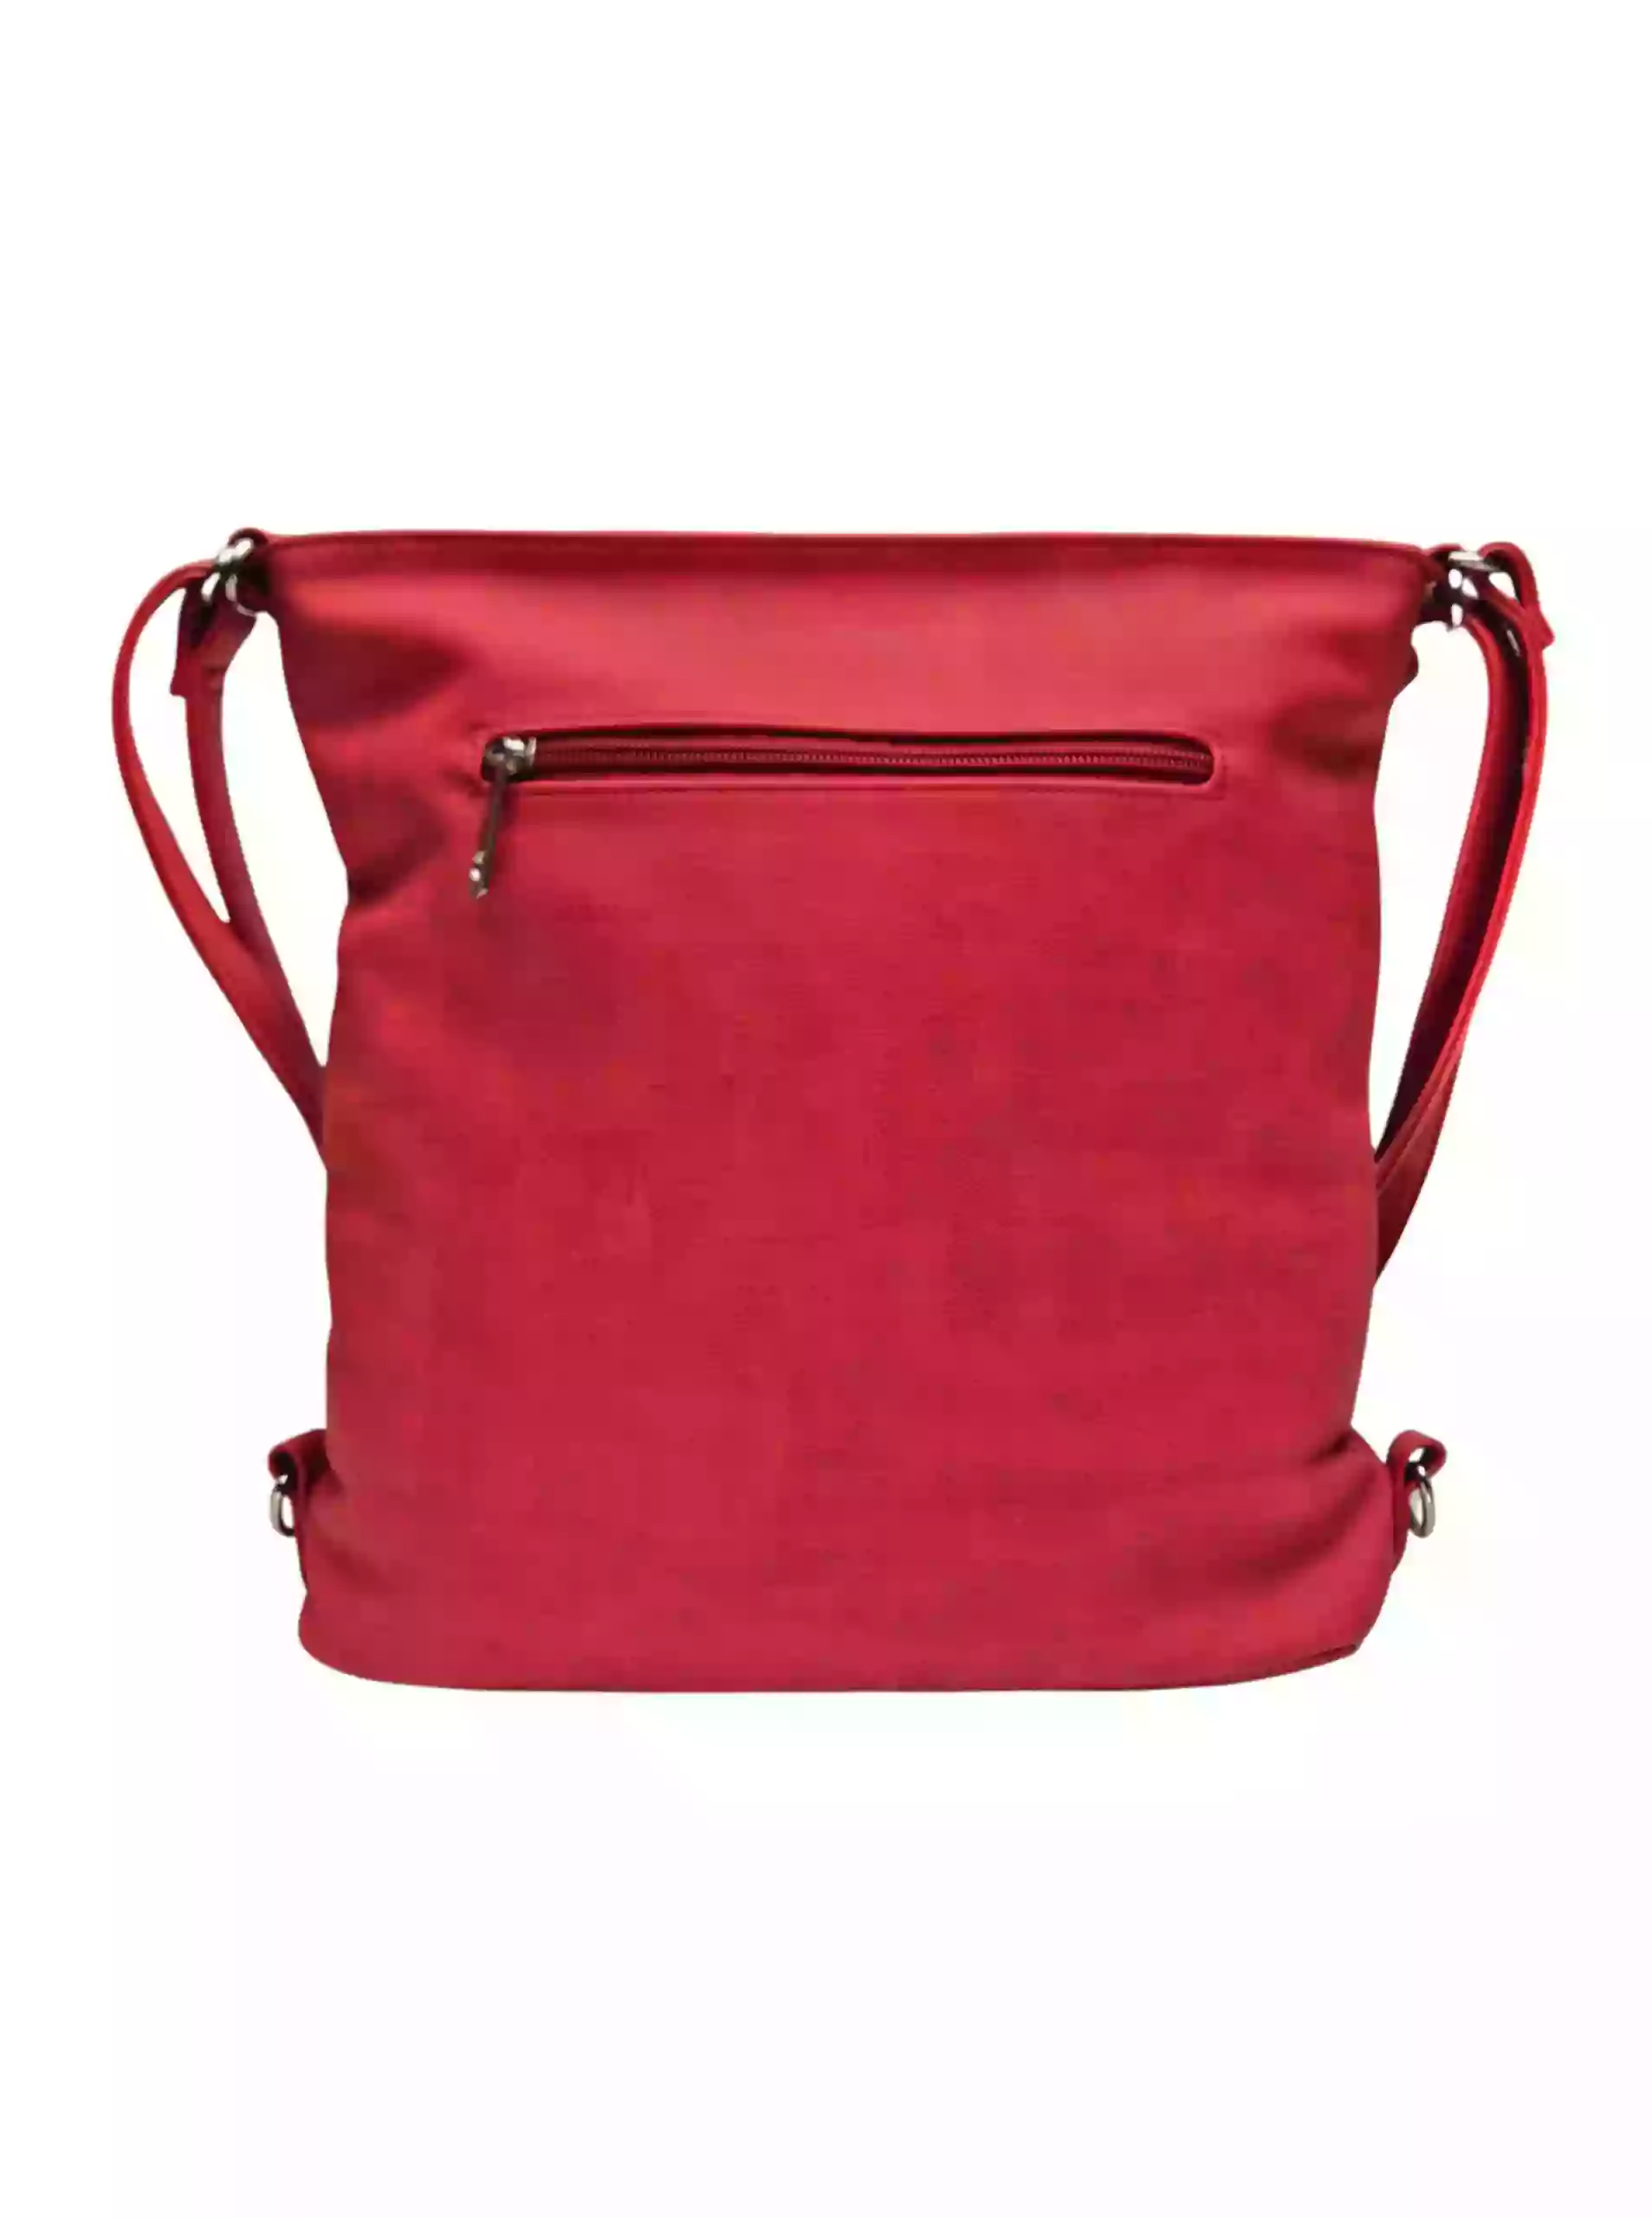 Střední červený kabelko-batoh 2v1 s praktickou kapsou, Tapple, H190062, zadní strana kabelko-batohu